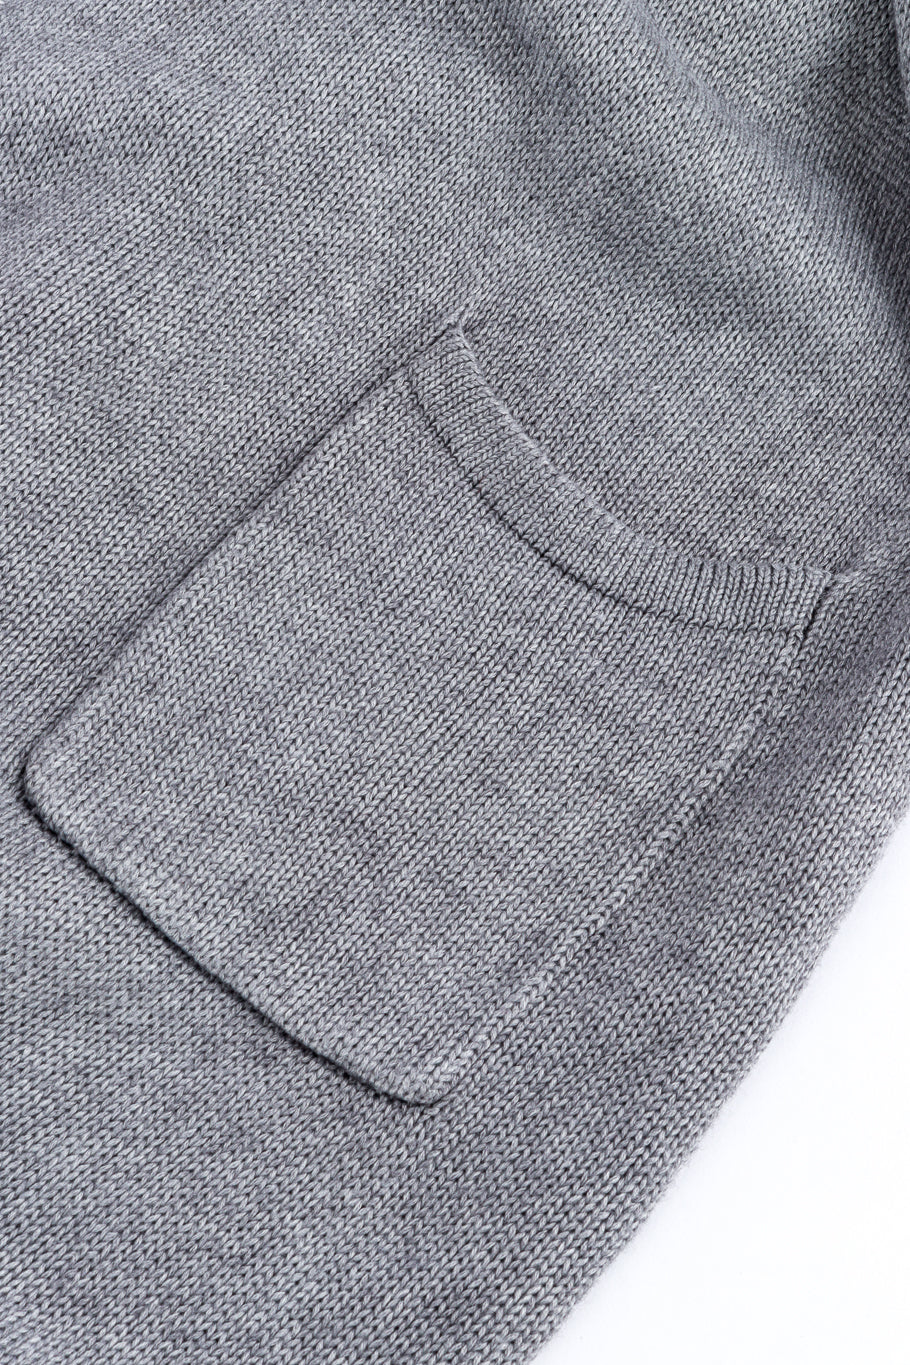 Vintage Hérmes Cotton Cardigan Duster patch pocket @recess la